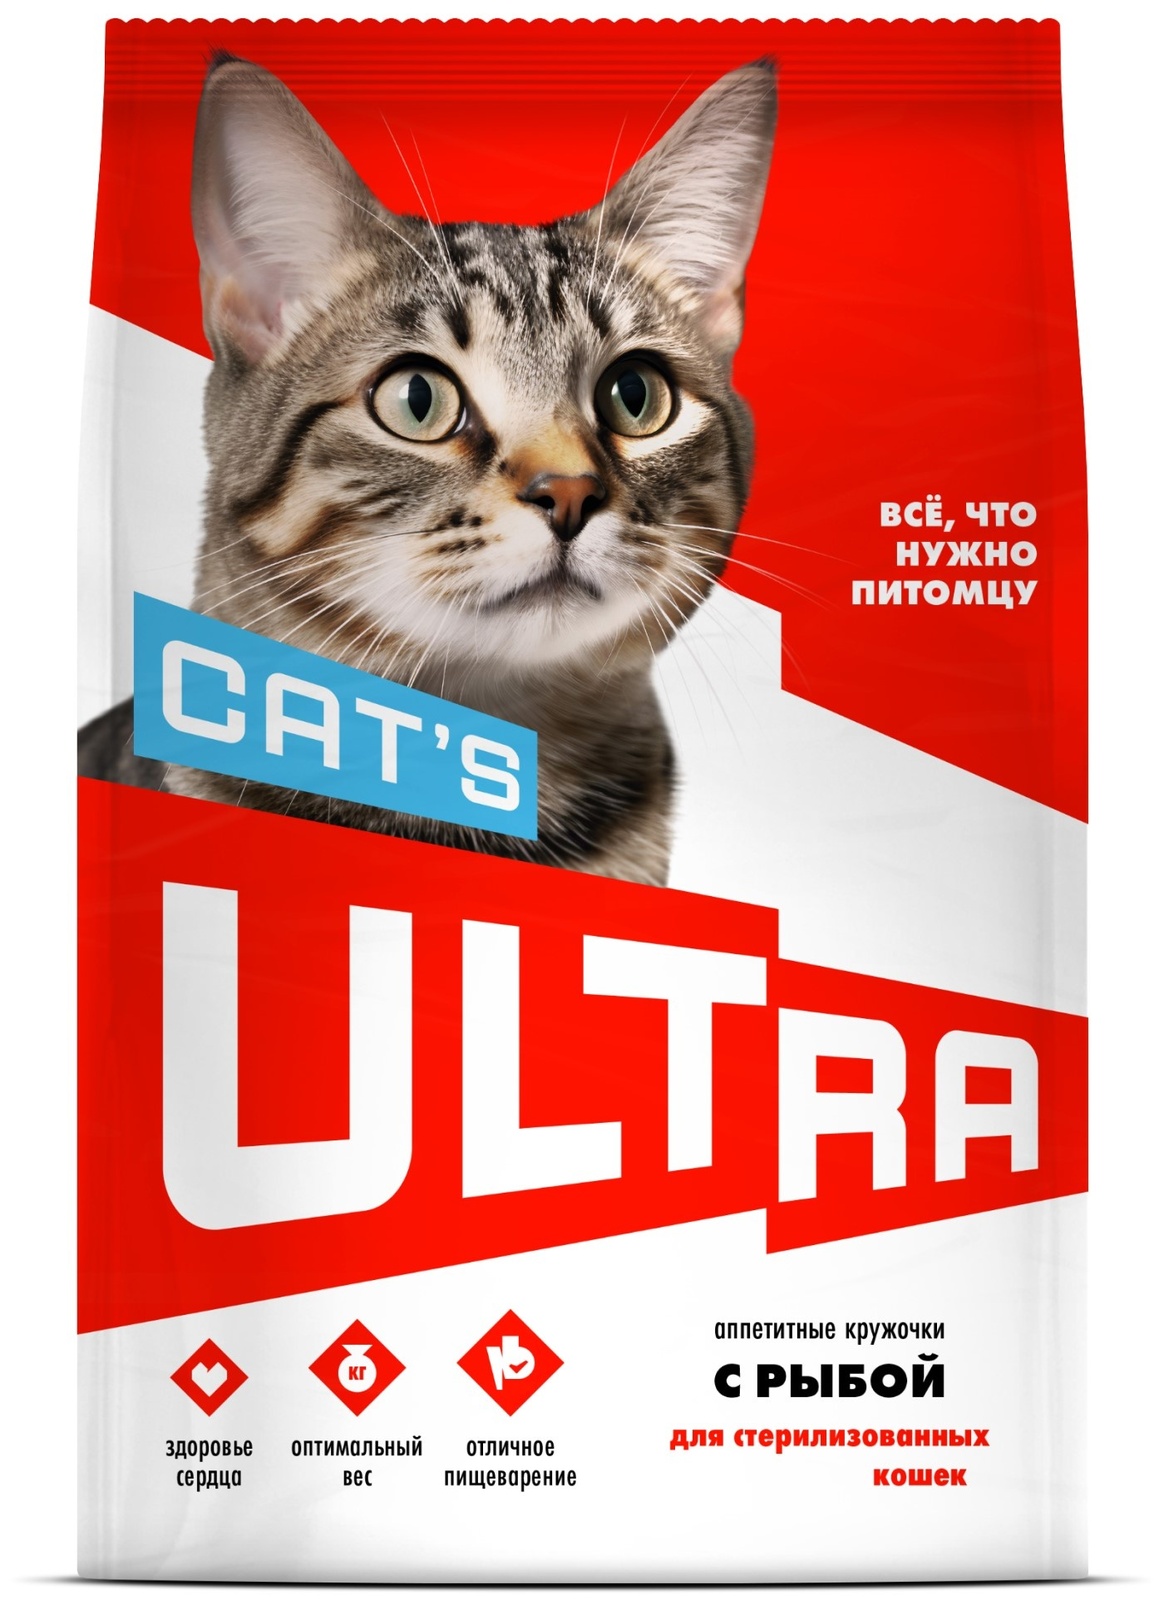 ULTRA ULTRA аппетитные кружочки с рыбой для стерилизованных кошек (3 кг) ultra ultra аппетитные кружочки с рыбой для стерилизованных кошек 3 кг